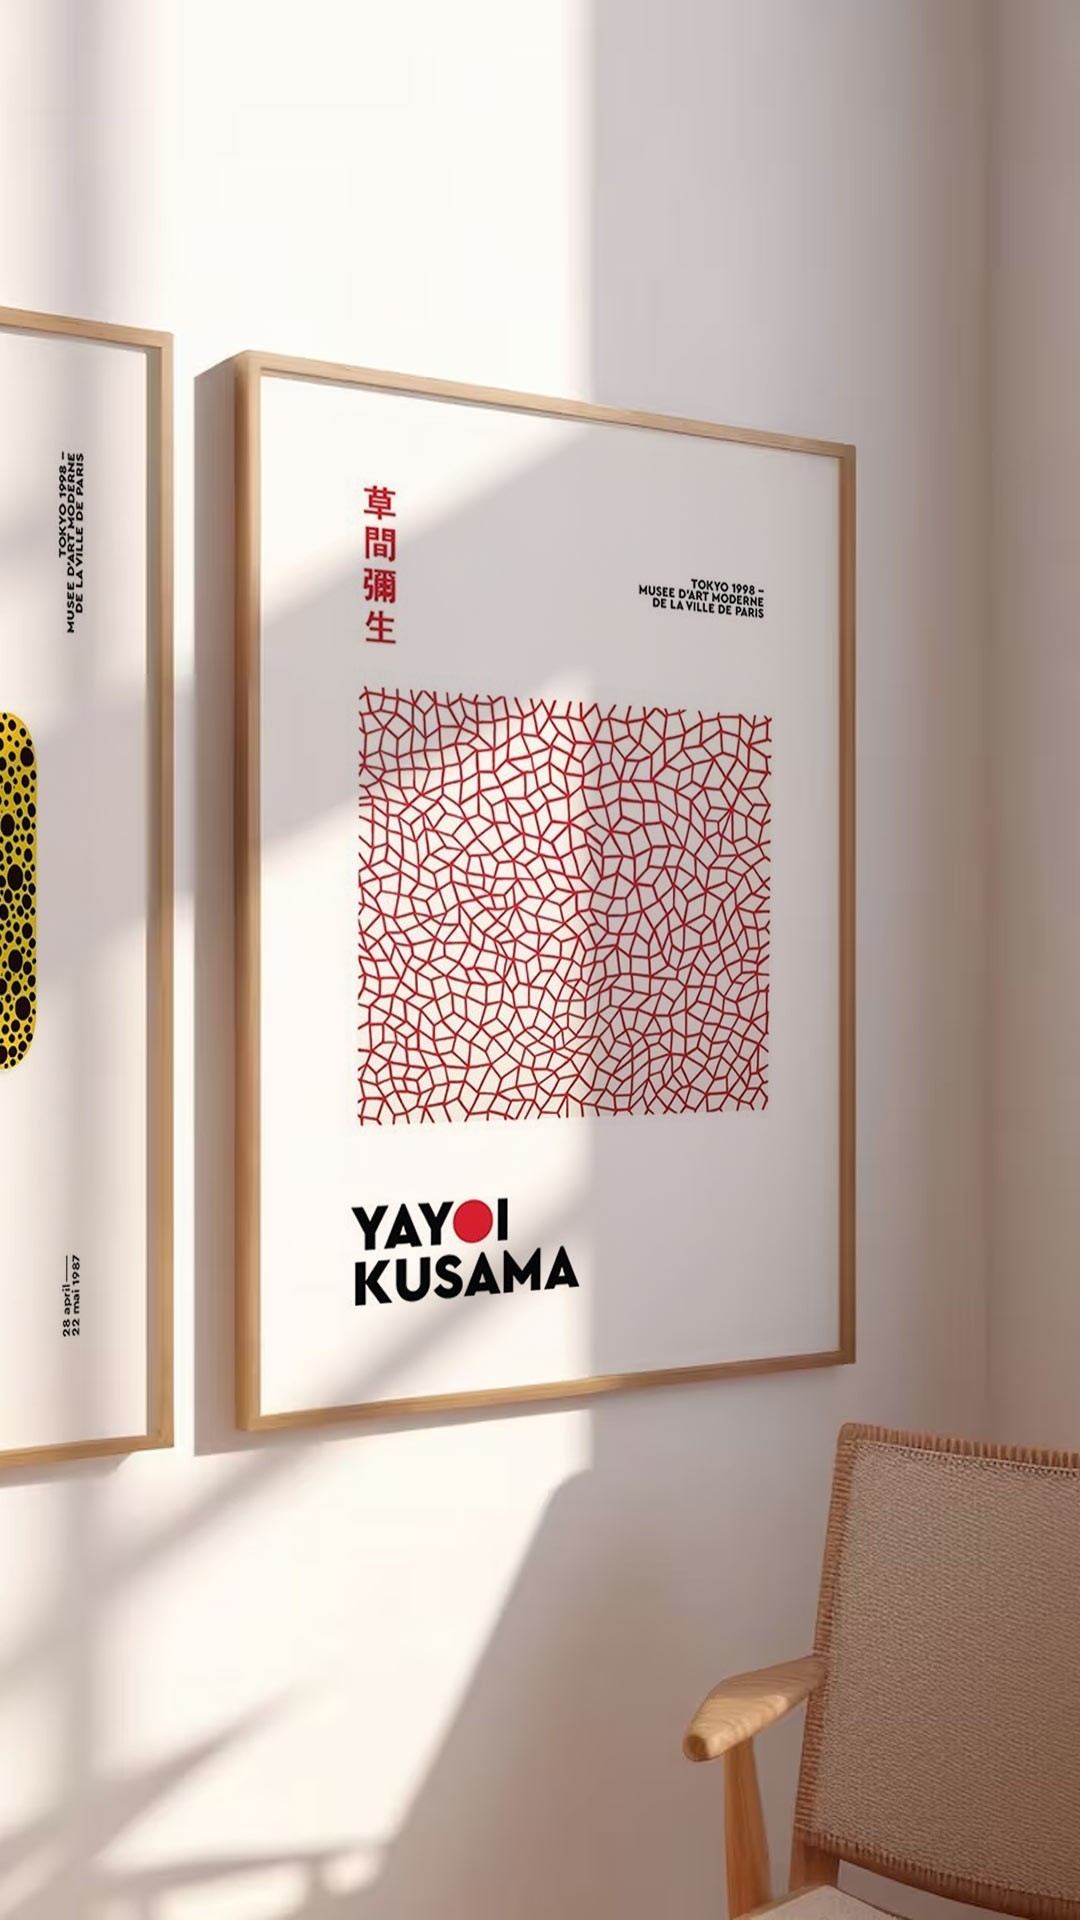 Αφίσες-Poster με έργα της Yayoi Kusama